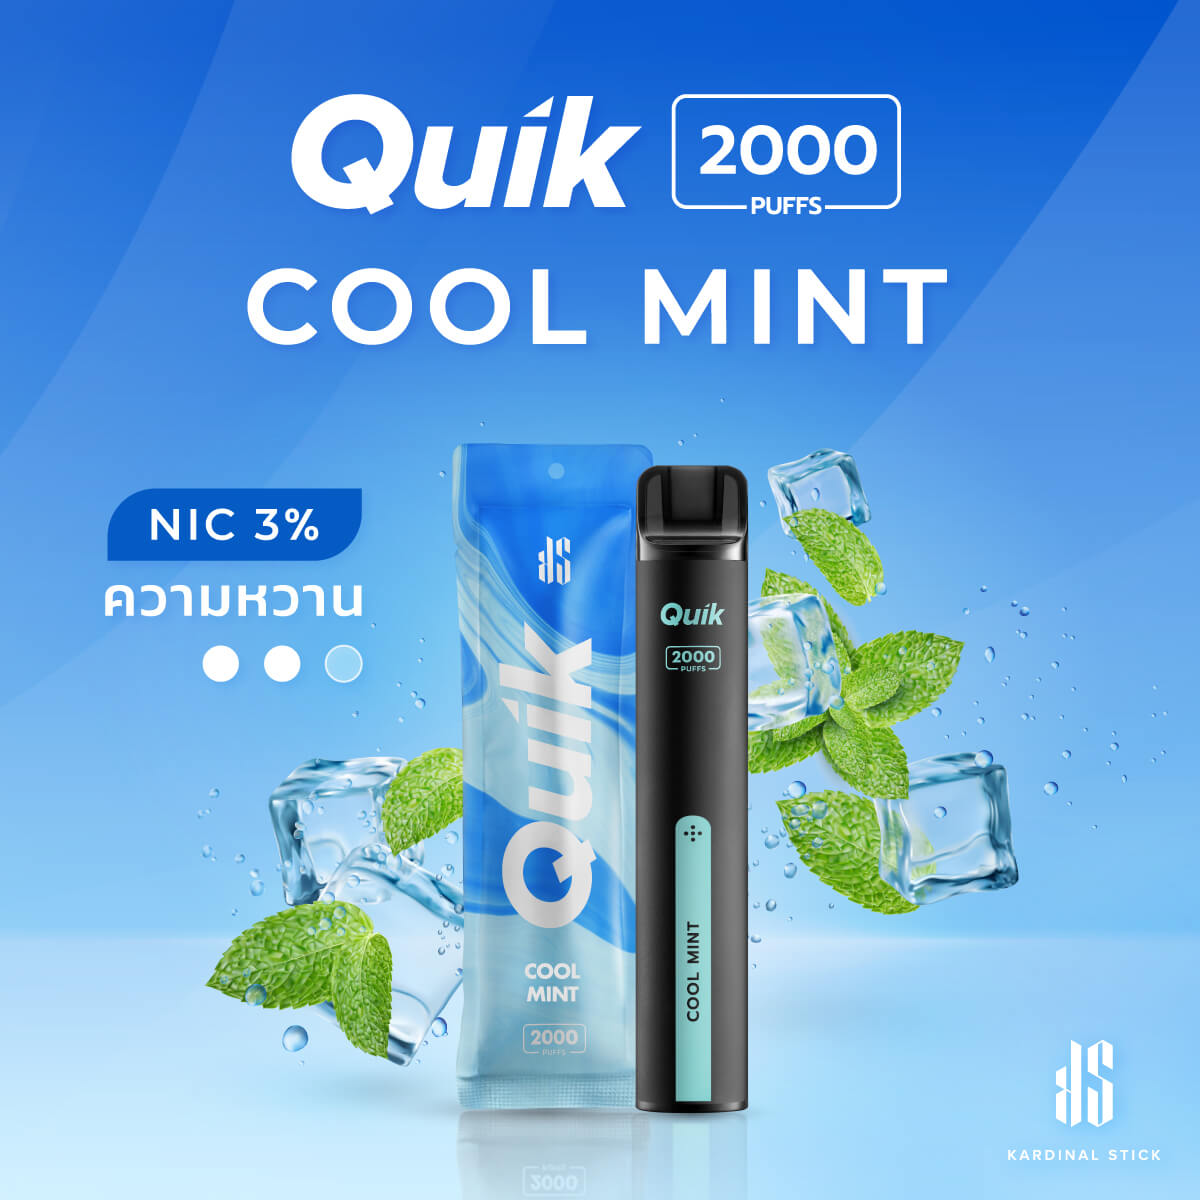 KS QUIK 2000 กลิ่นมื้นท์ เย็น สดชื่น ออกแบบกลิ่นให้ได้ที่สุดโดย Kardinal Stick ที่ไม่ใช่บุหรี่ไฟฟ้าแบบเปลี่ยนหัว ยกขบวนกลิ่นมาให้เลือกเพียบ